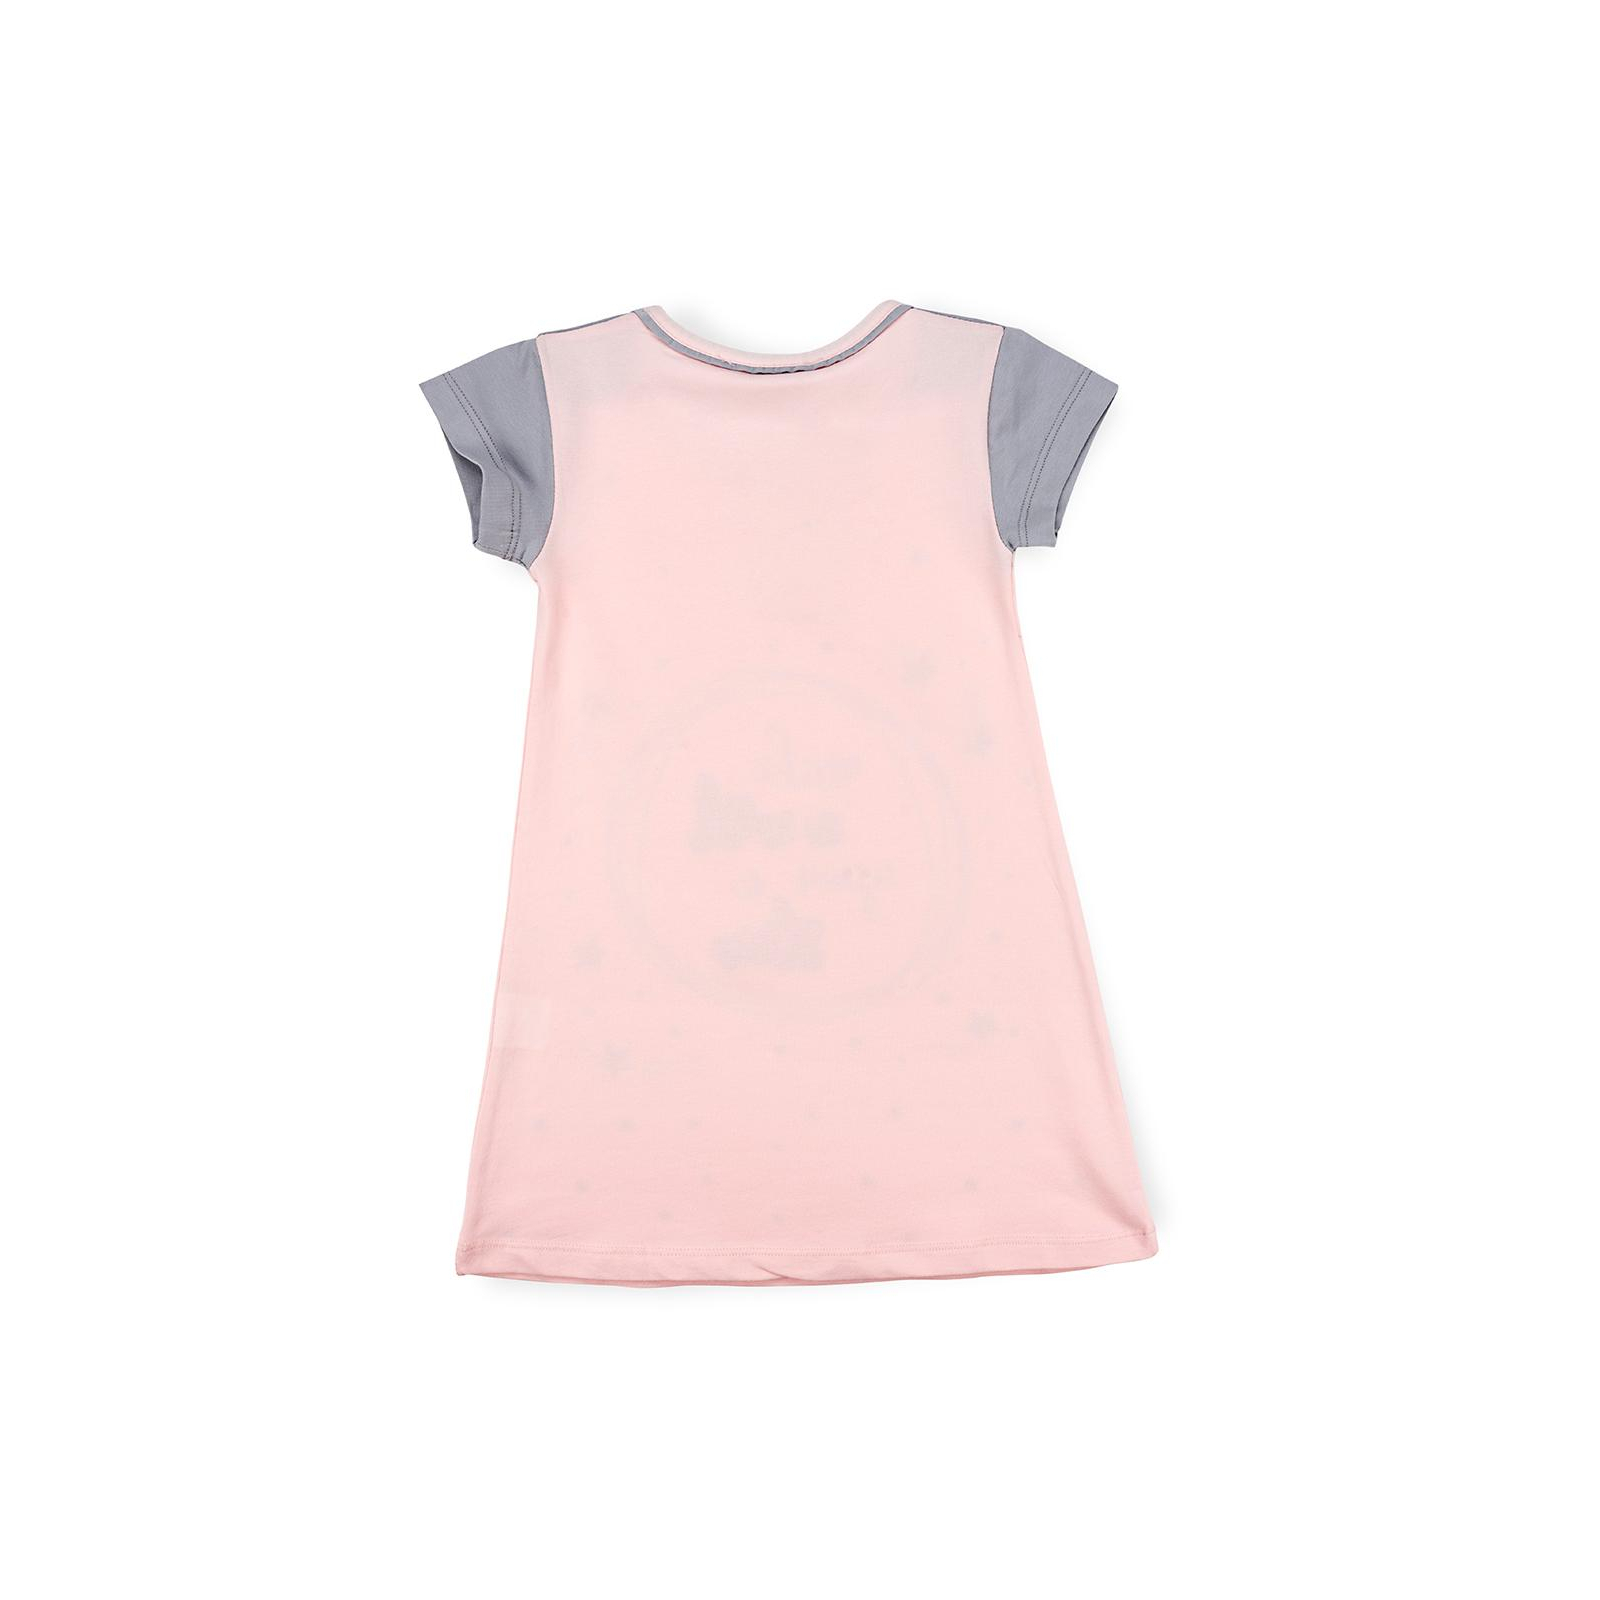 Пижама Matilda сорочка із зірочками (7992-2-98G-pink) изображение 2